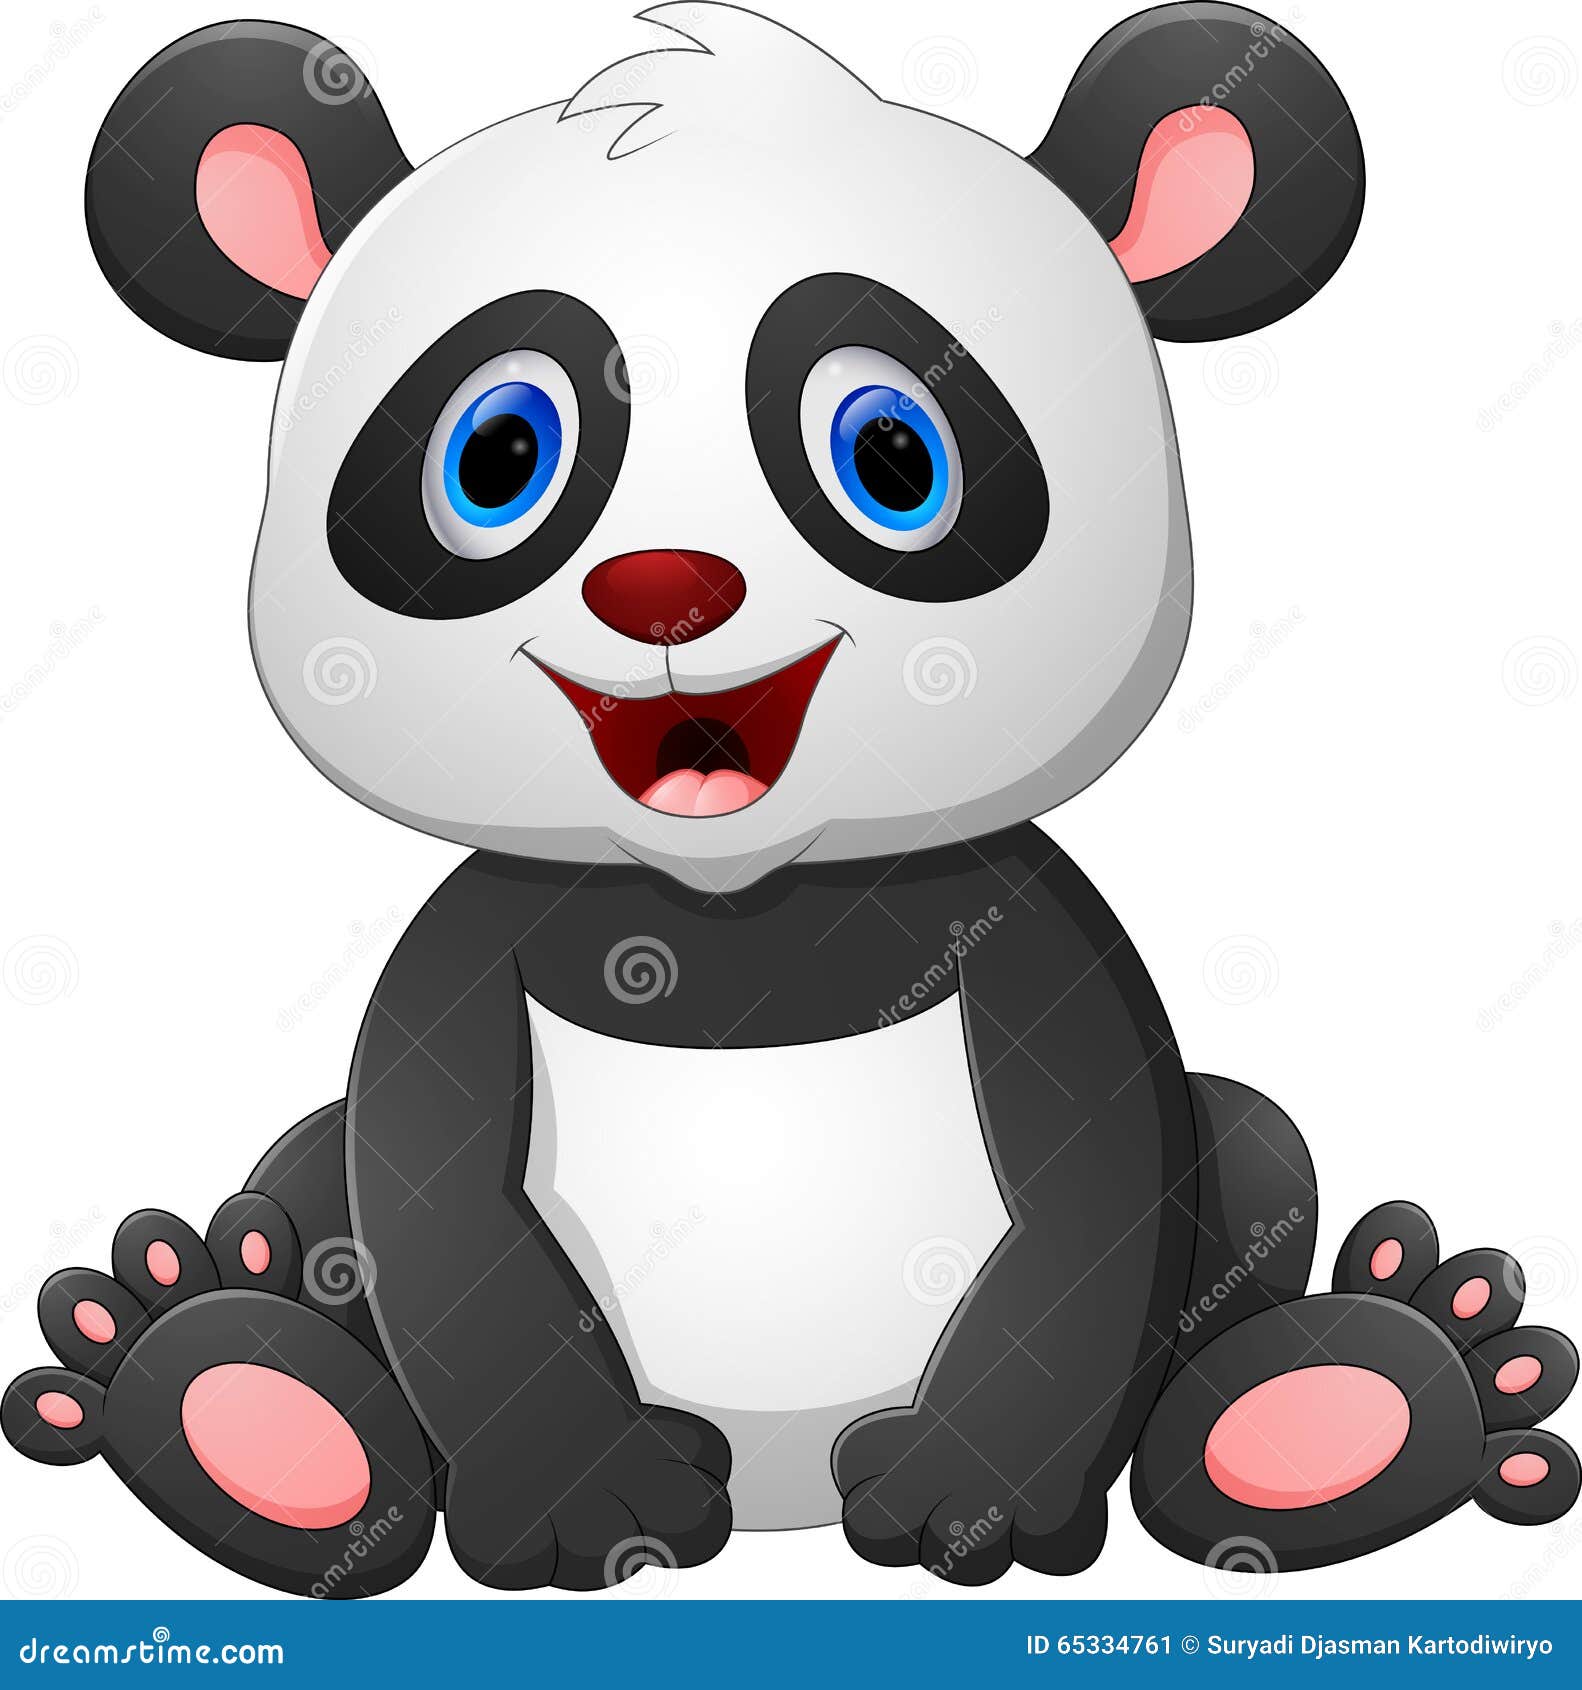 Cute baby panda cartoon stock vector. Illustration of mascot - 65334761